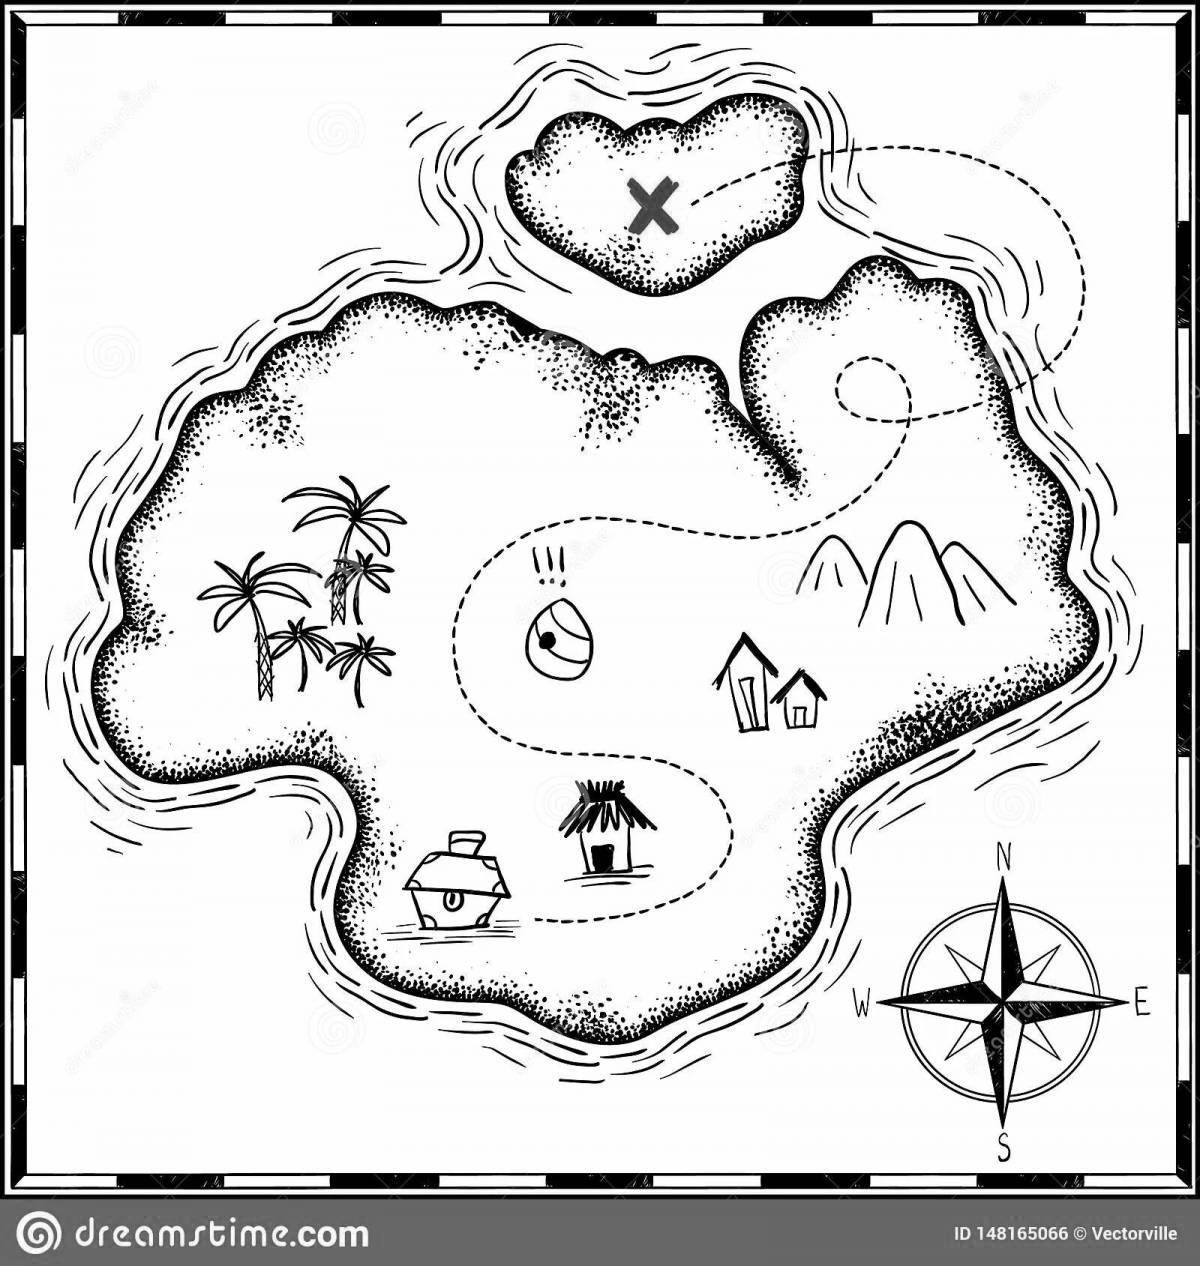 Pirate treasure adventure map coloring book